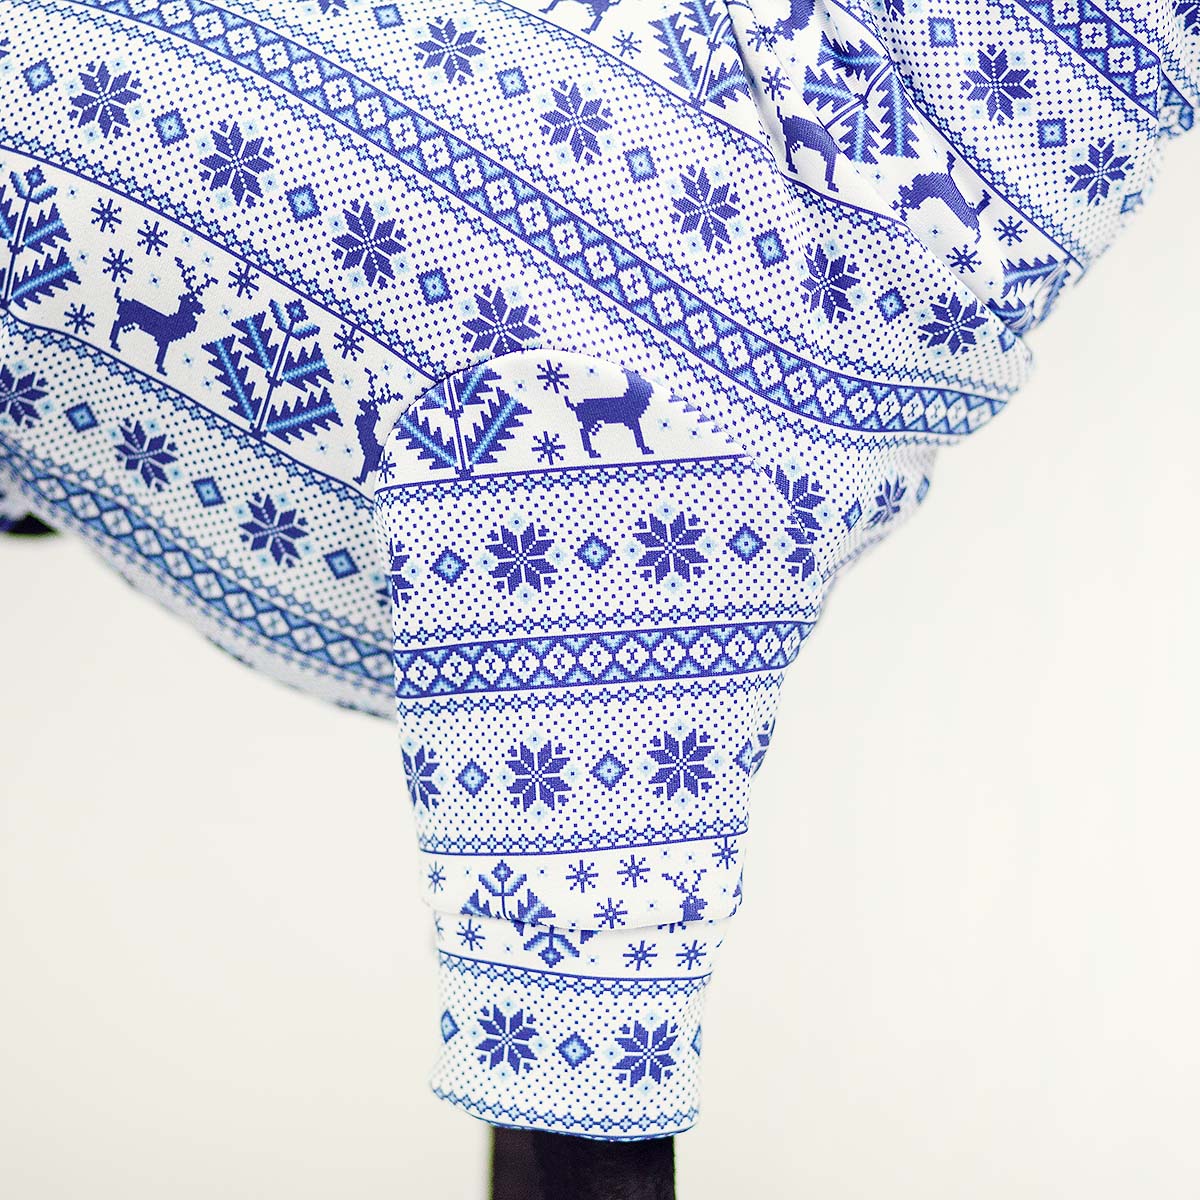 Italian greyhound clothing ARCTIC NORTH blouse image 3